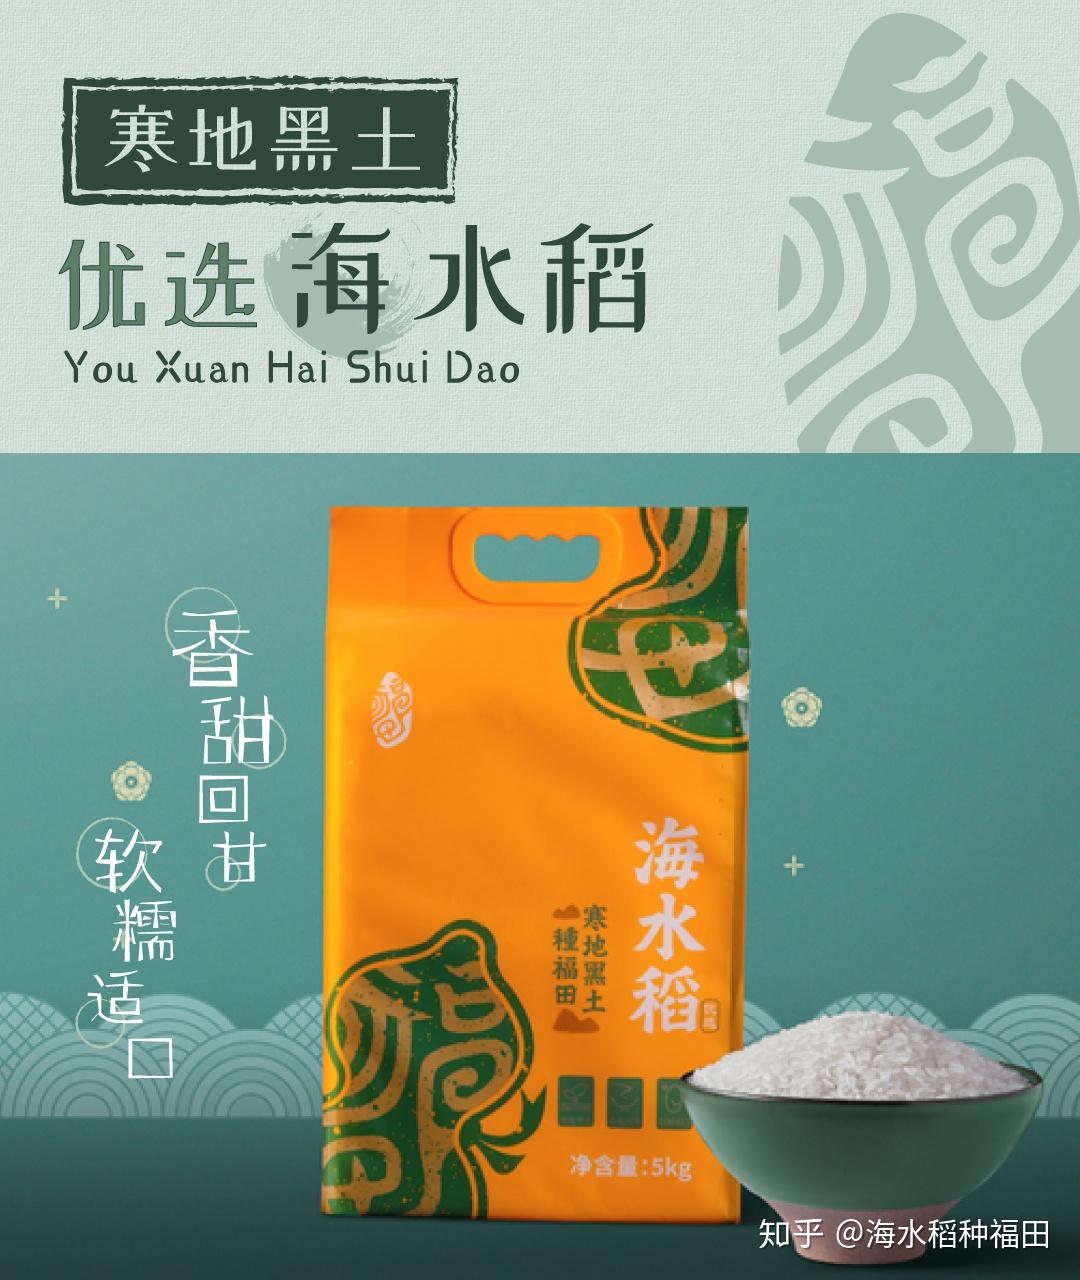 种福田·优选海水稻两款产品,分别产自潍坊禹王湿地盐碱地和黑龙江